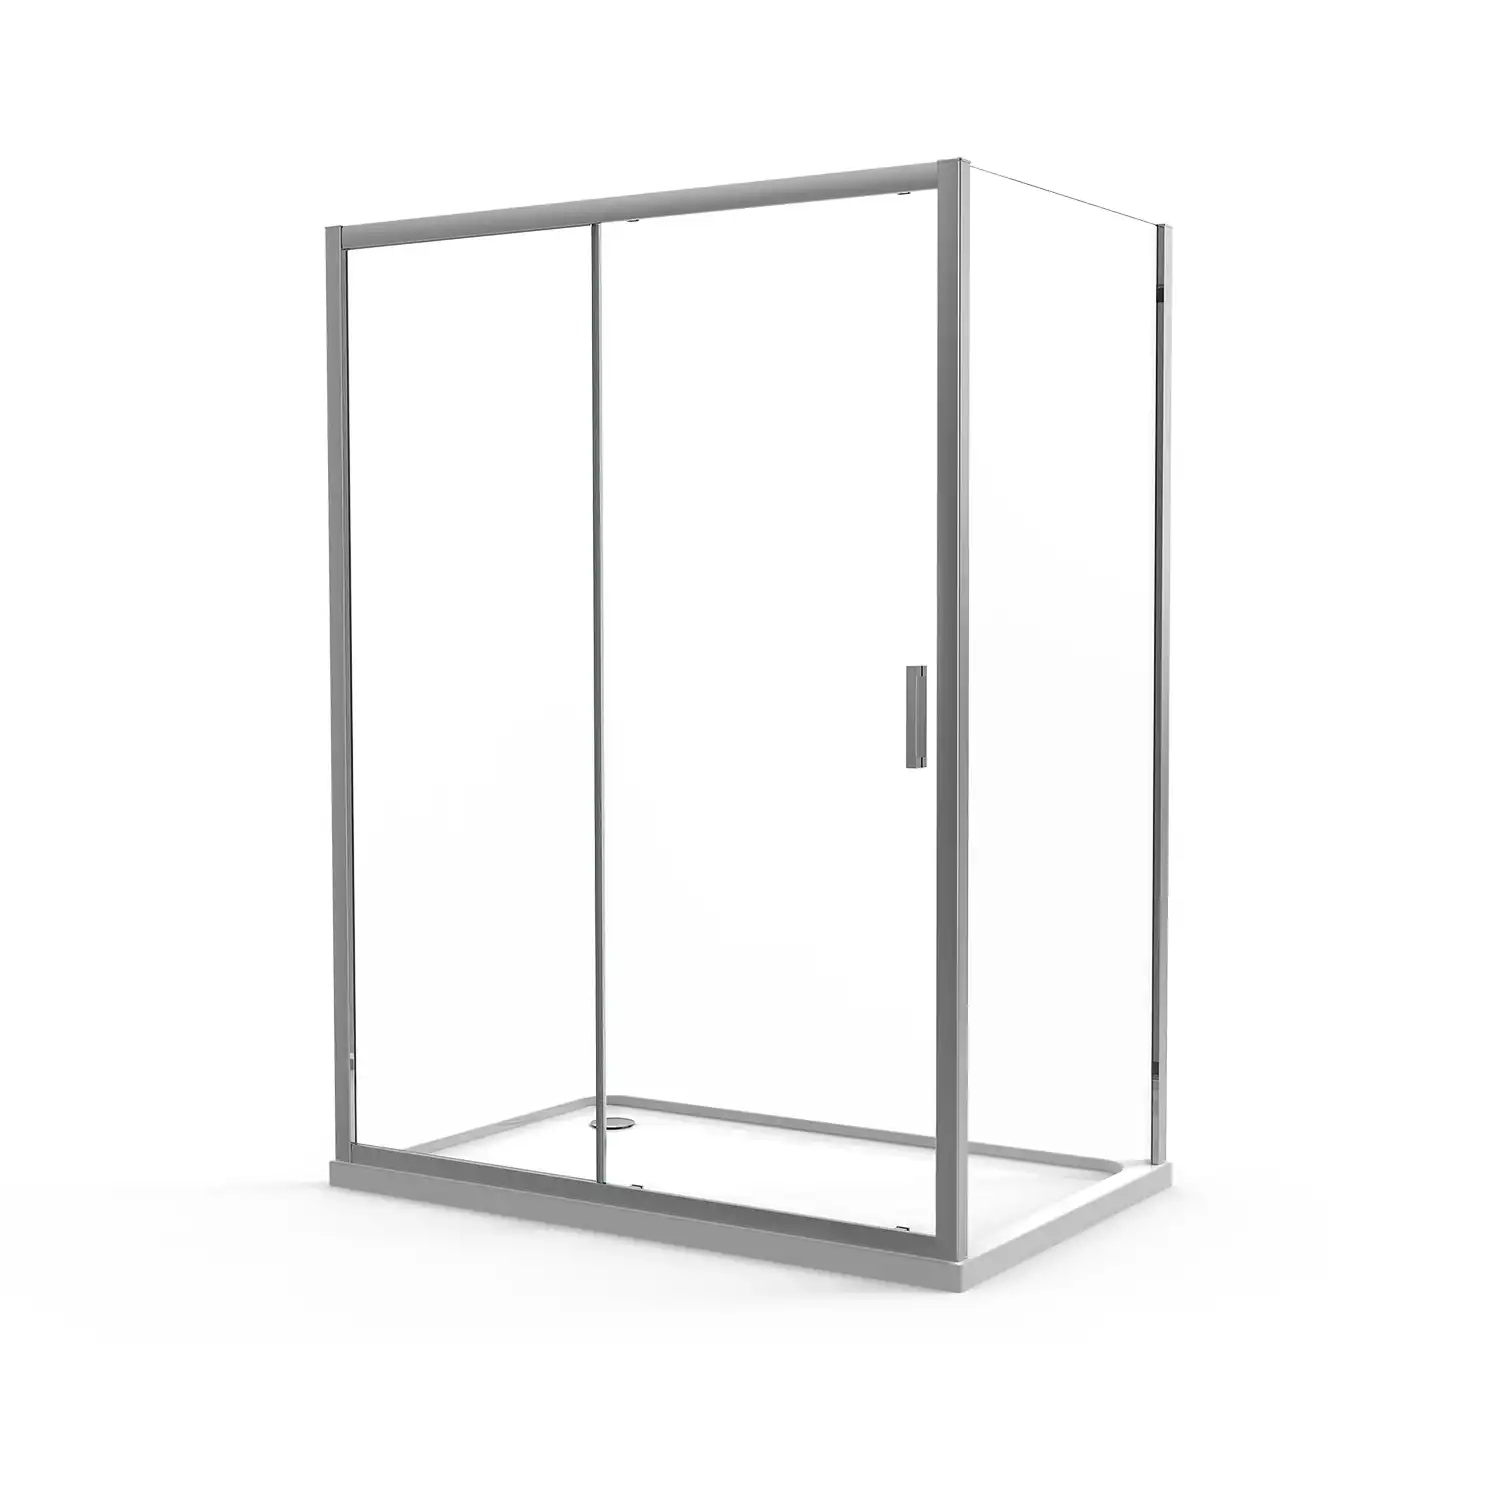 Box doccia angolare 70x110 cm in cristallo trasparente, con apertura 1 anta scorrevole e parete fissa | Vinagra